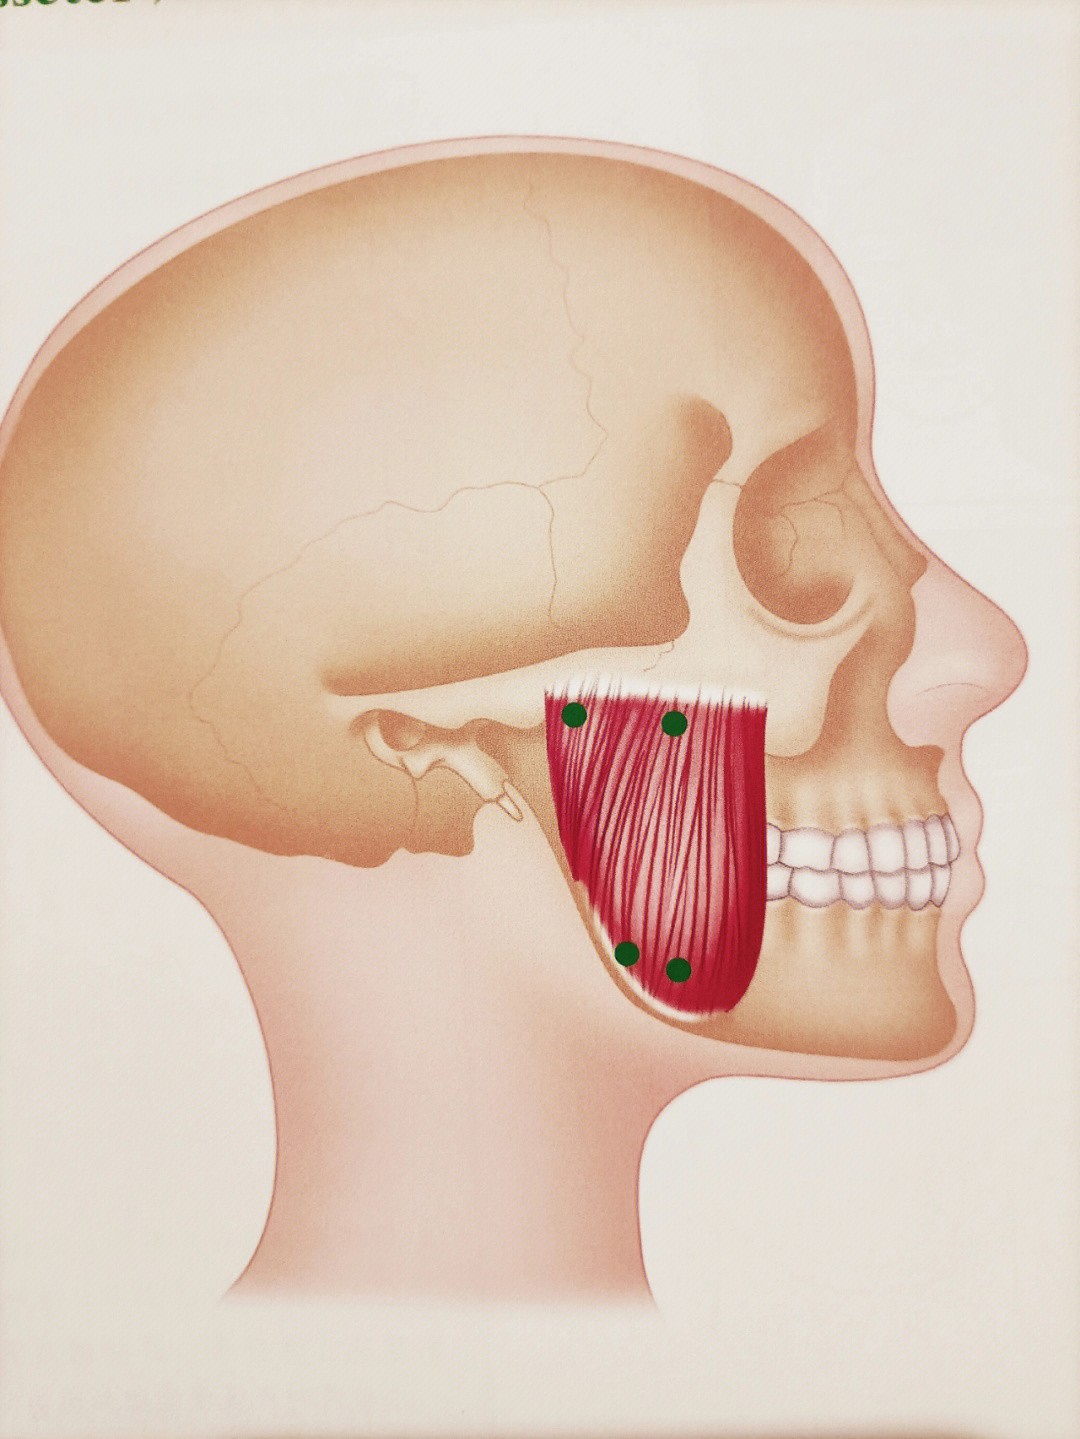 臼齿位置图片图片